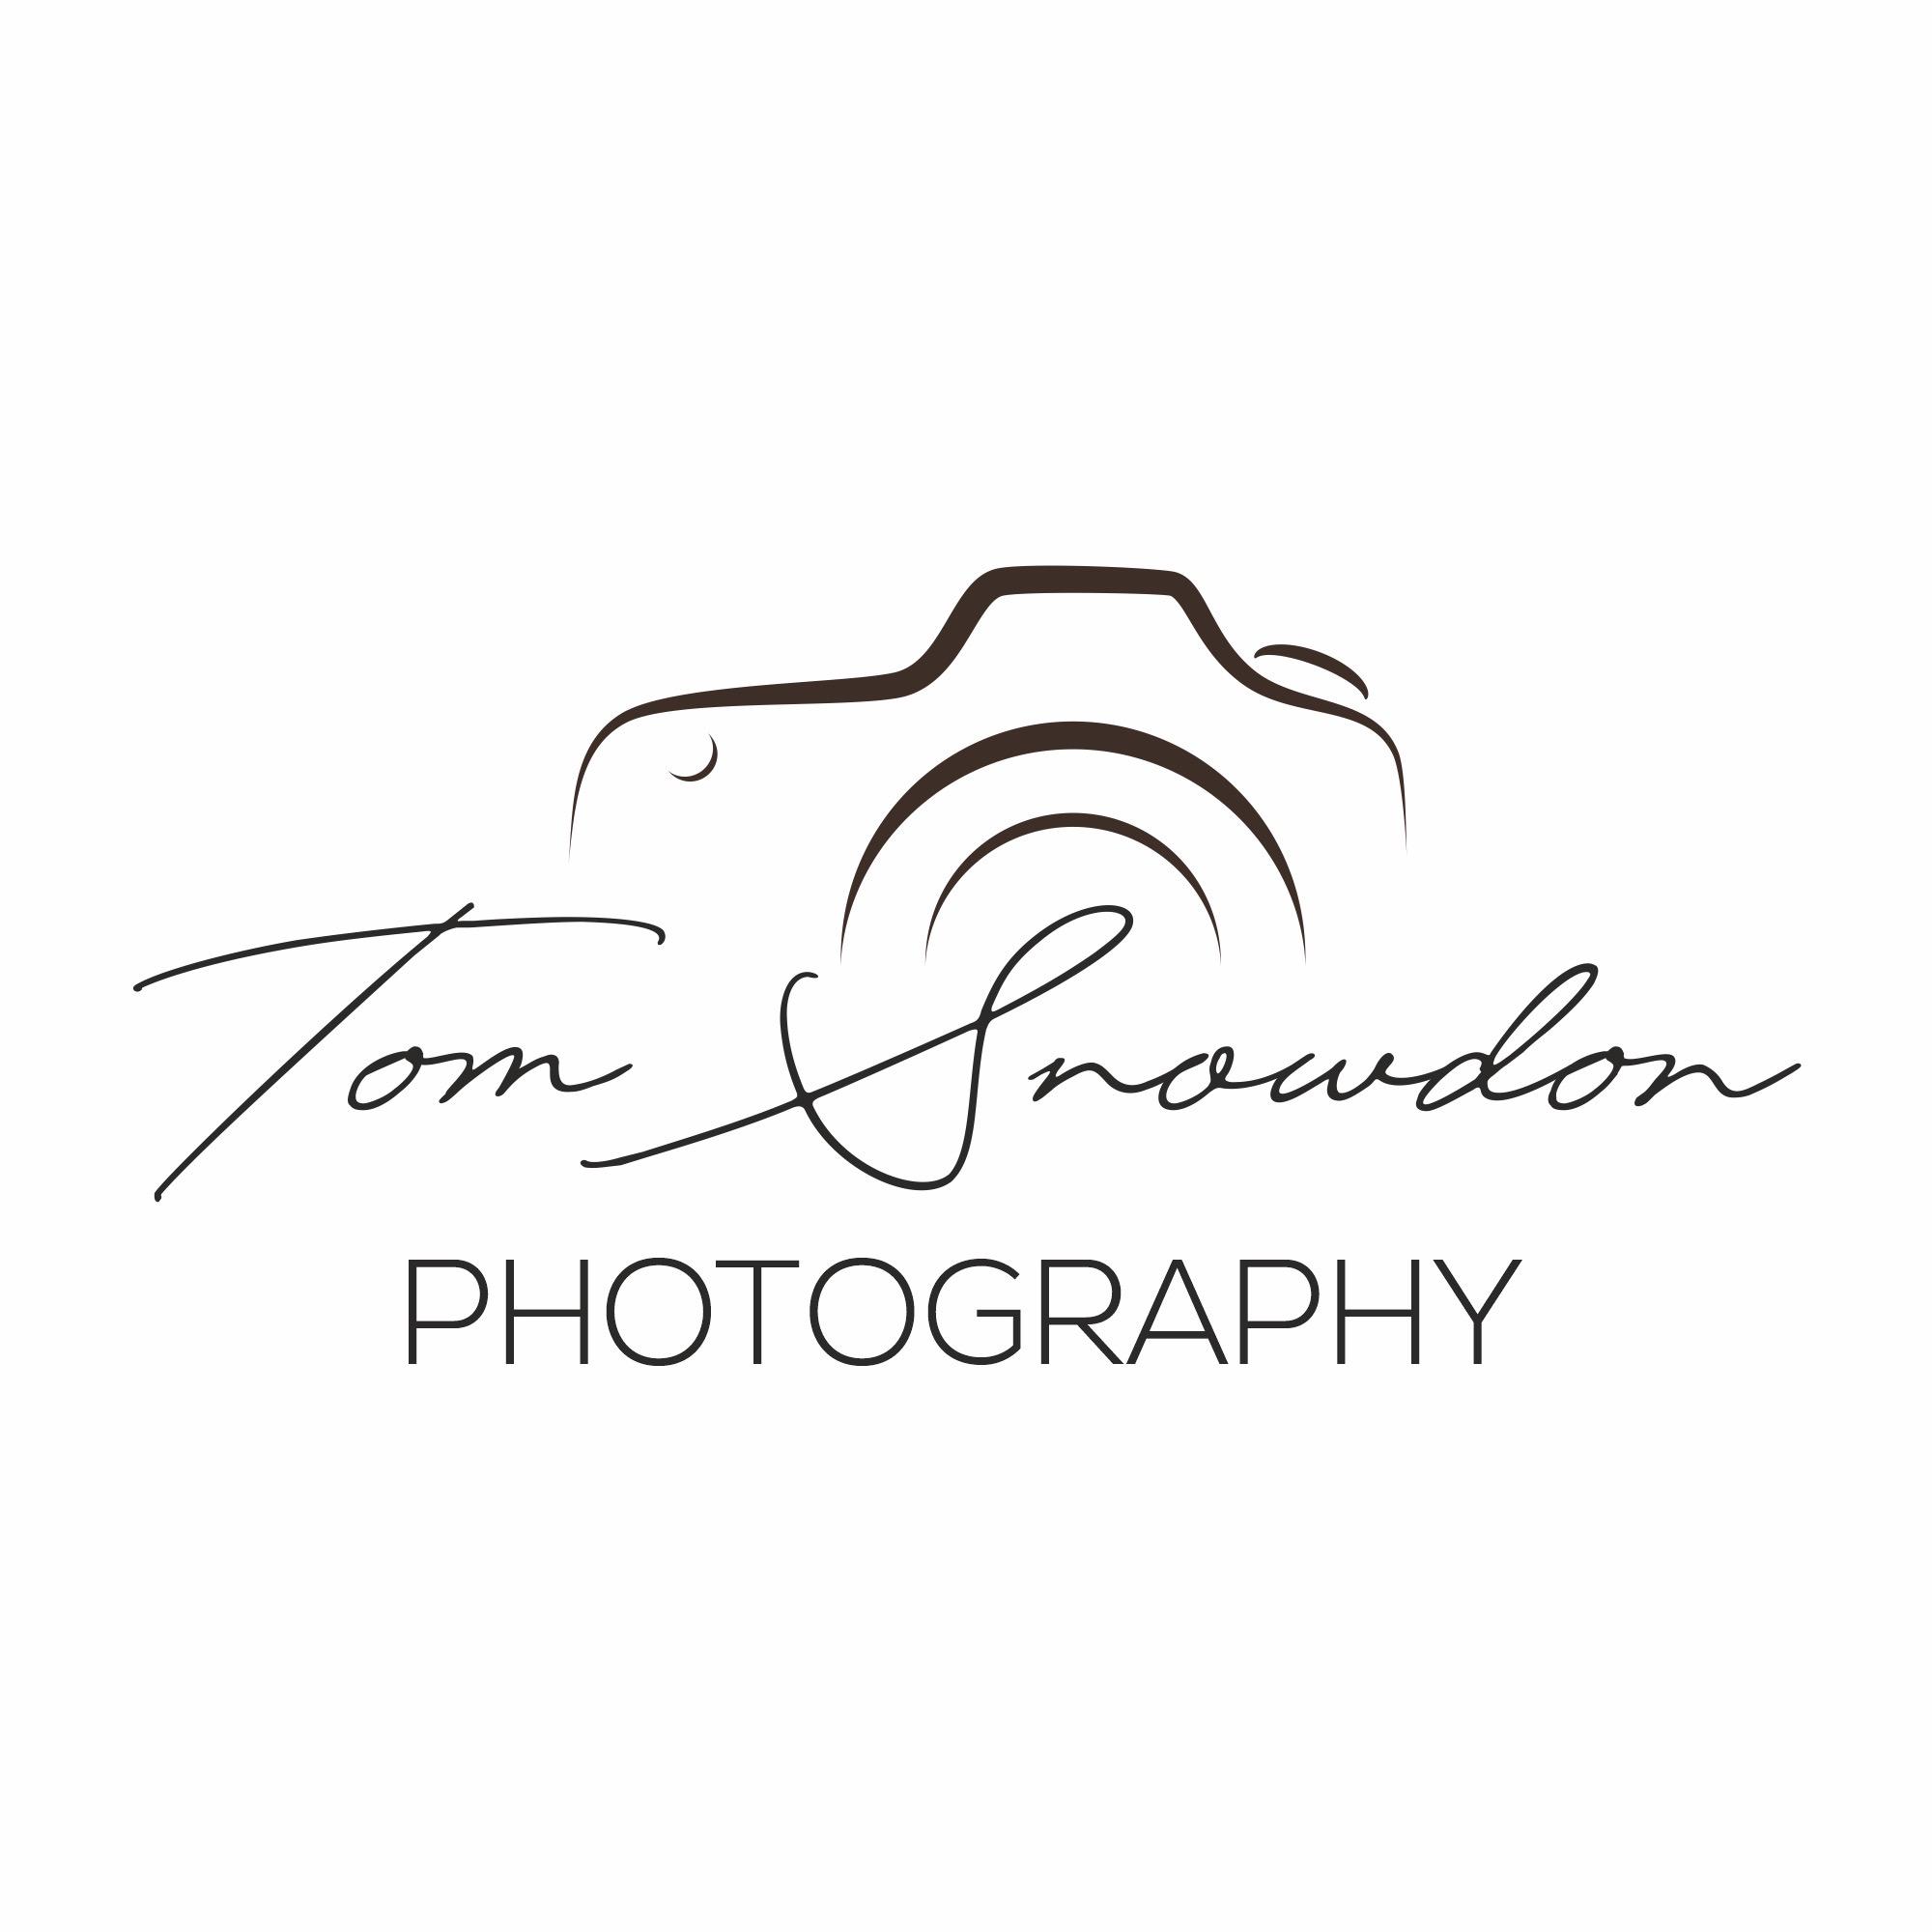 Thomas Snowdon Photography Logo